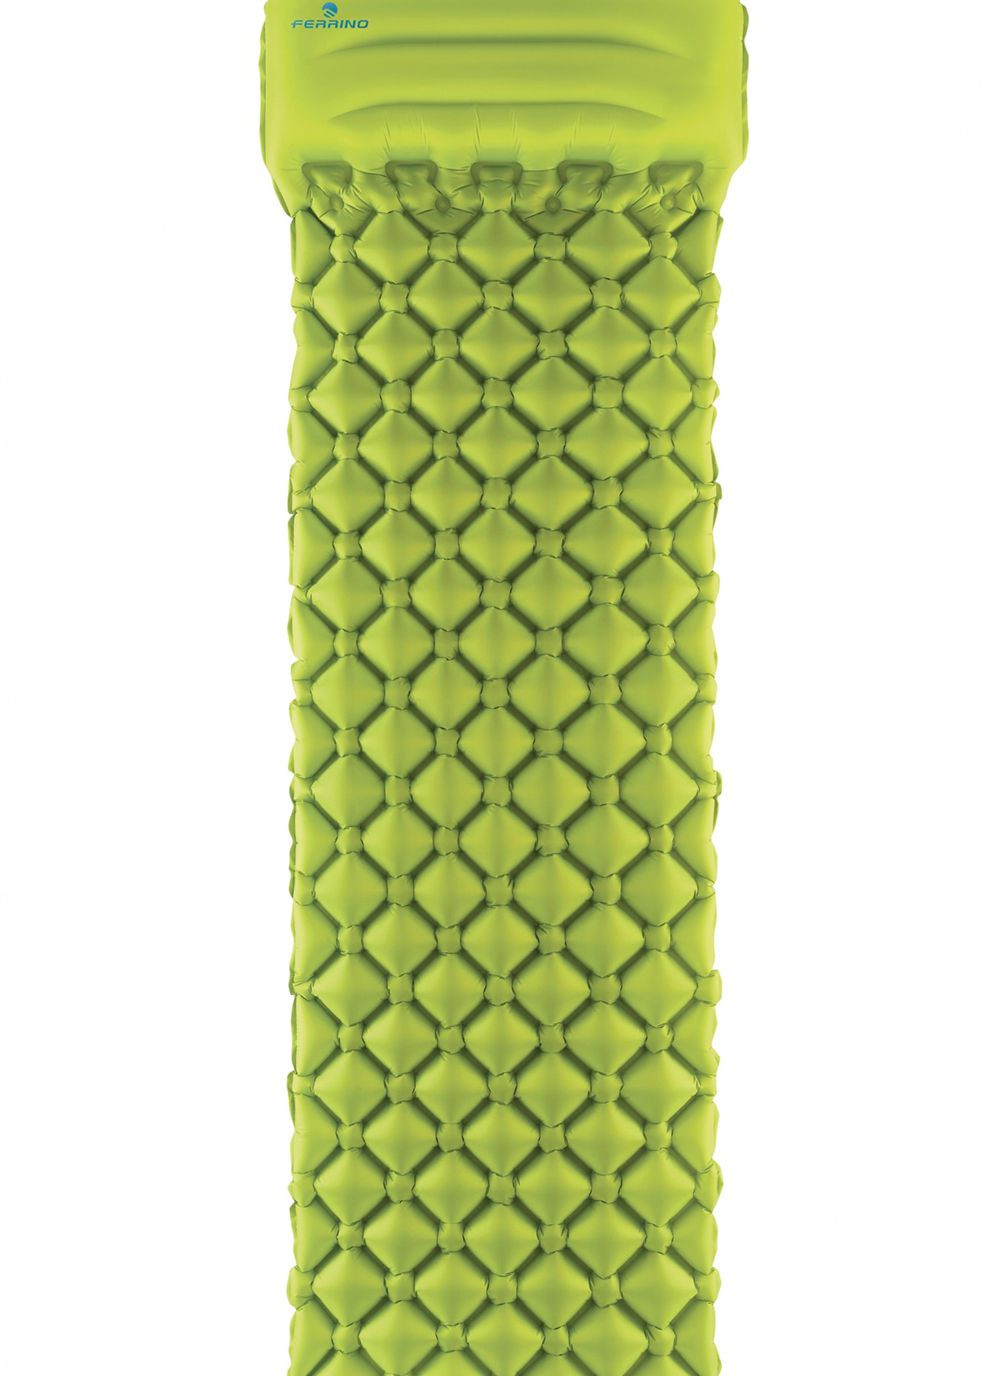 Килимок надувний Air Lite Pillow Mat Green Ferrino (268746929)